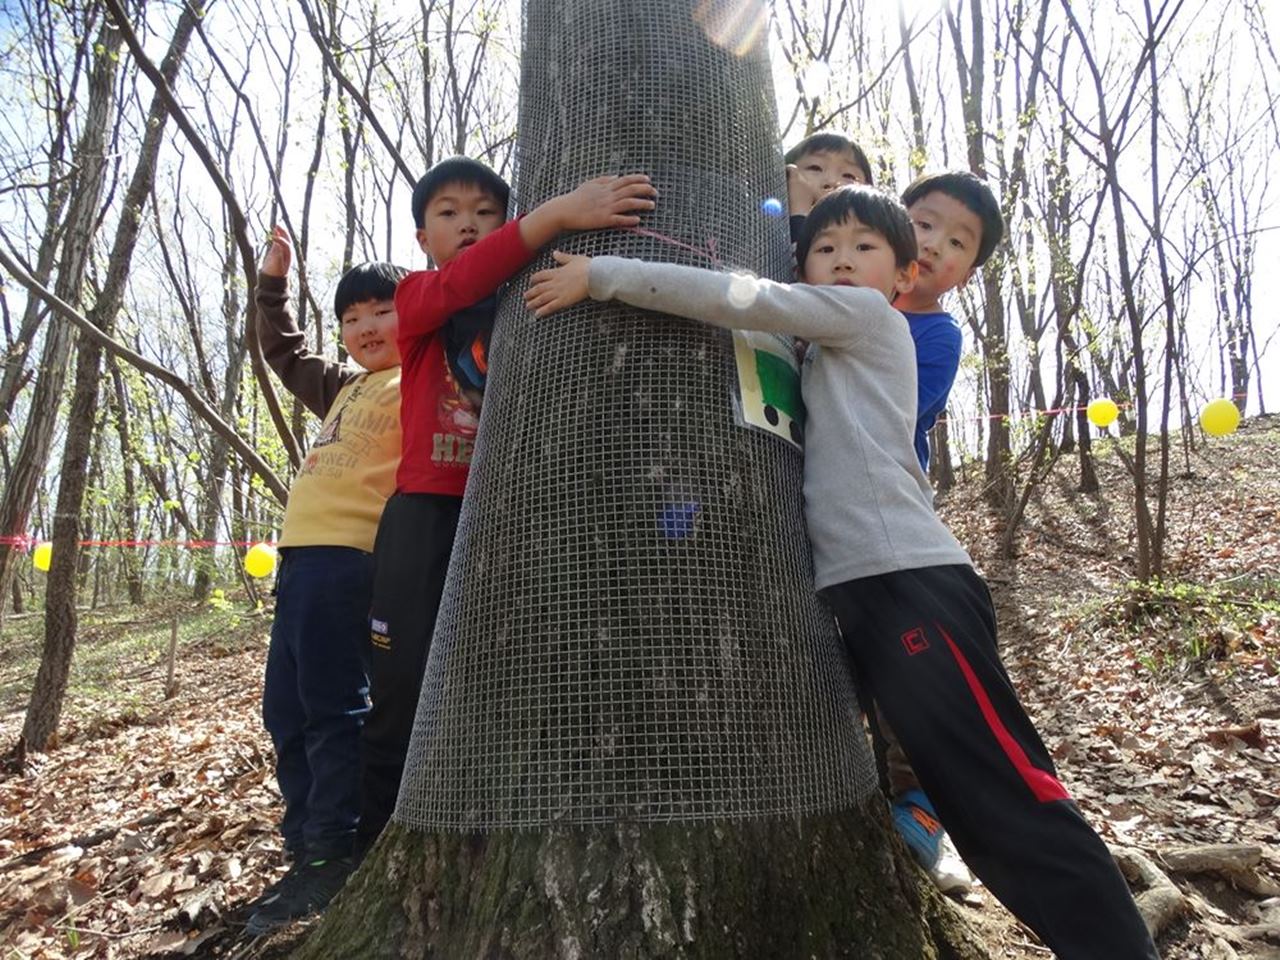 숲 생태 체험에 나선 지곡초등학교 학생들이 껴안고 있는 약 100살 가까운 신갈나무다. 그러나 이 나무도 교육부의 잘못 때문에 잘려 나갈 위기에 처해 있다. 